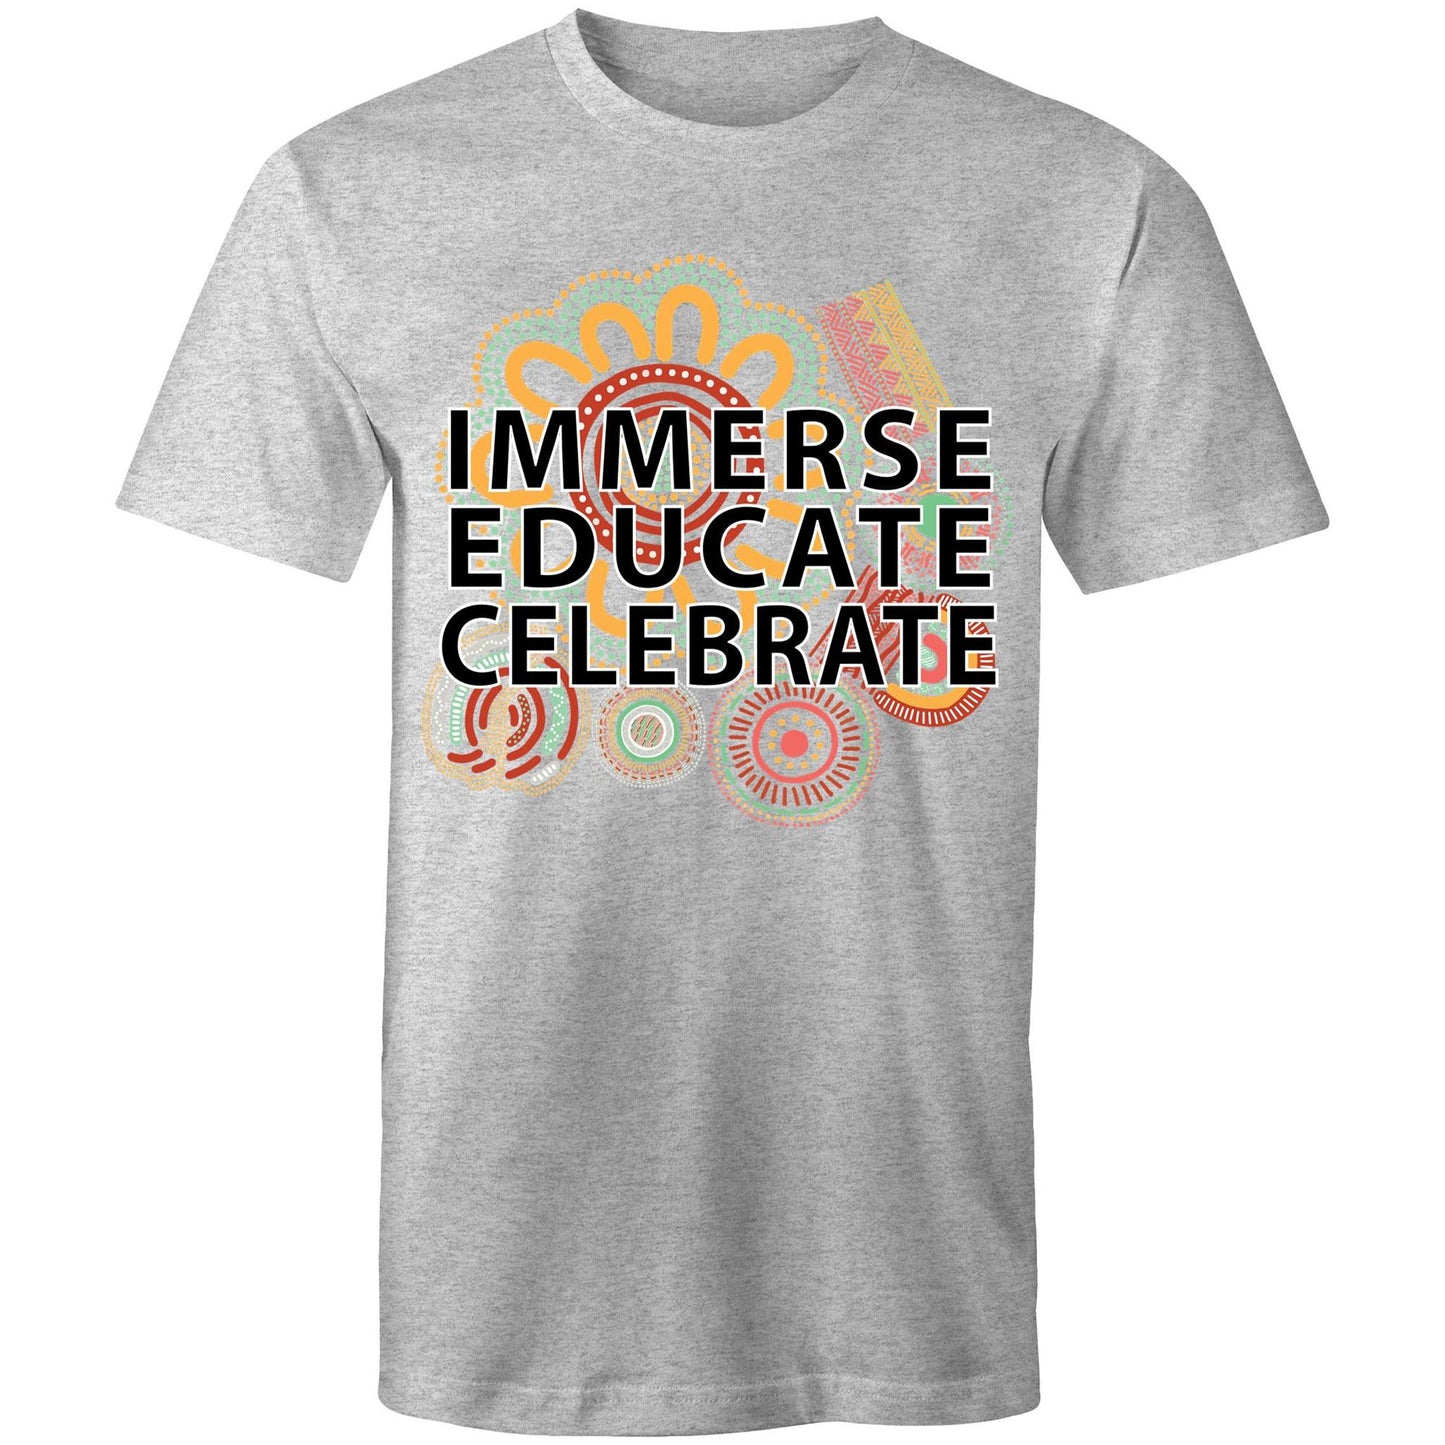 'Immerse, Educate, Celebrate' Aboriginal Design Unisex t-shirt